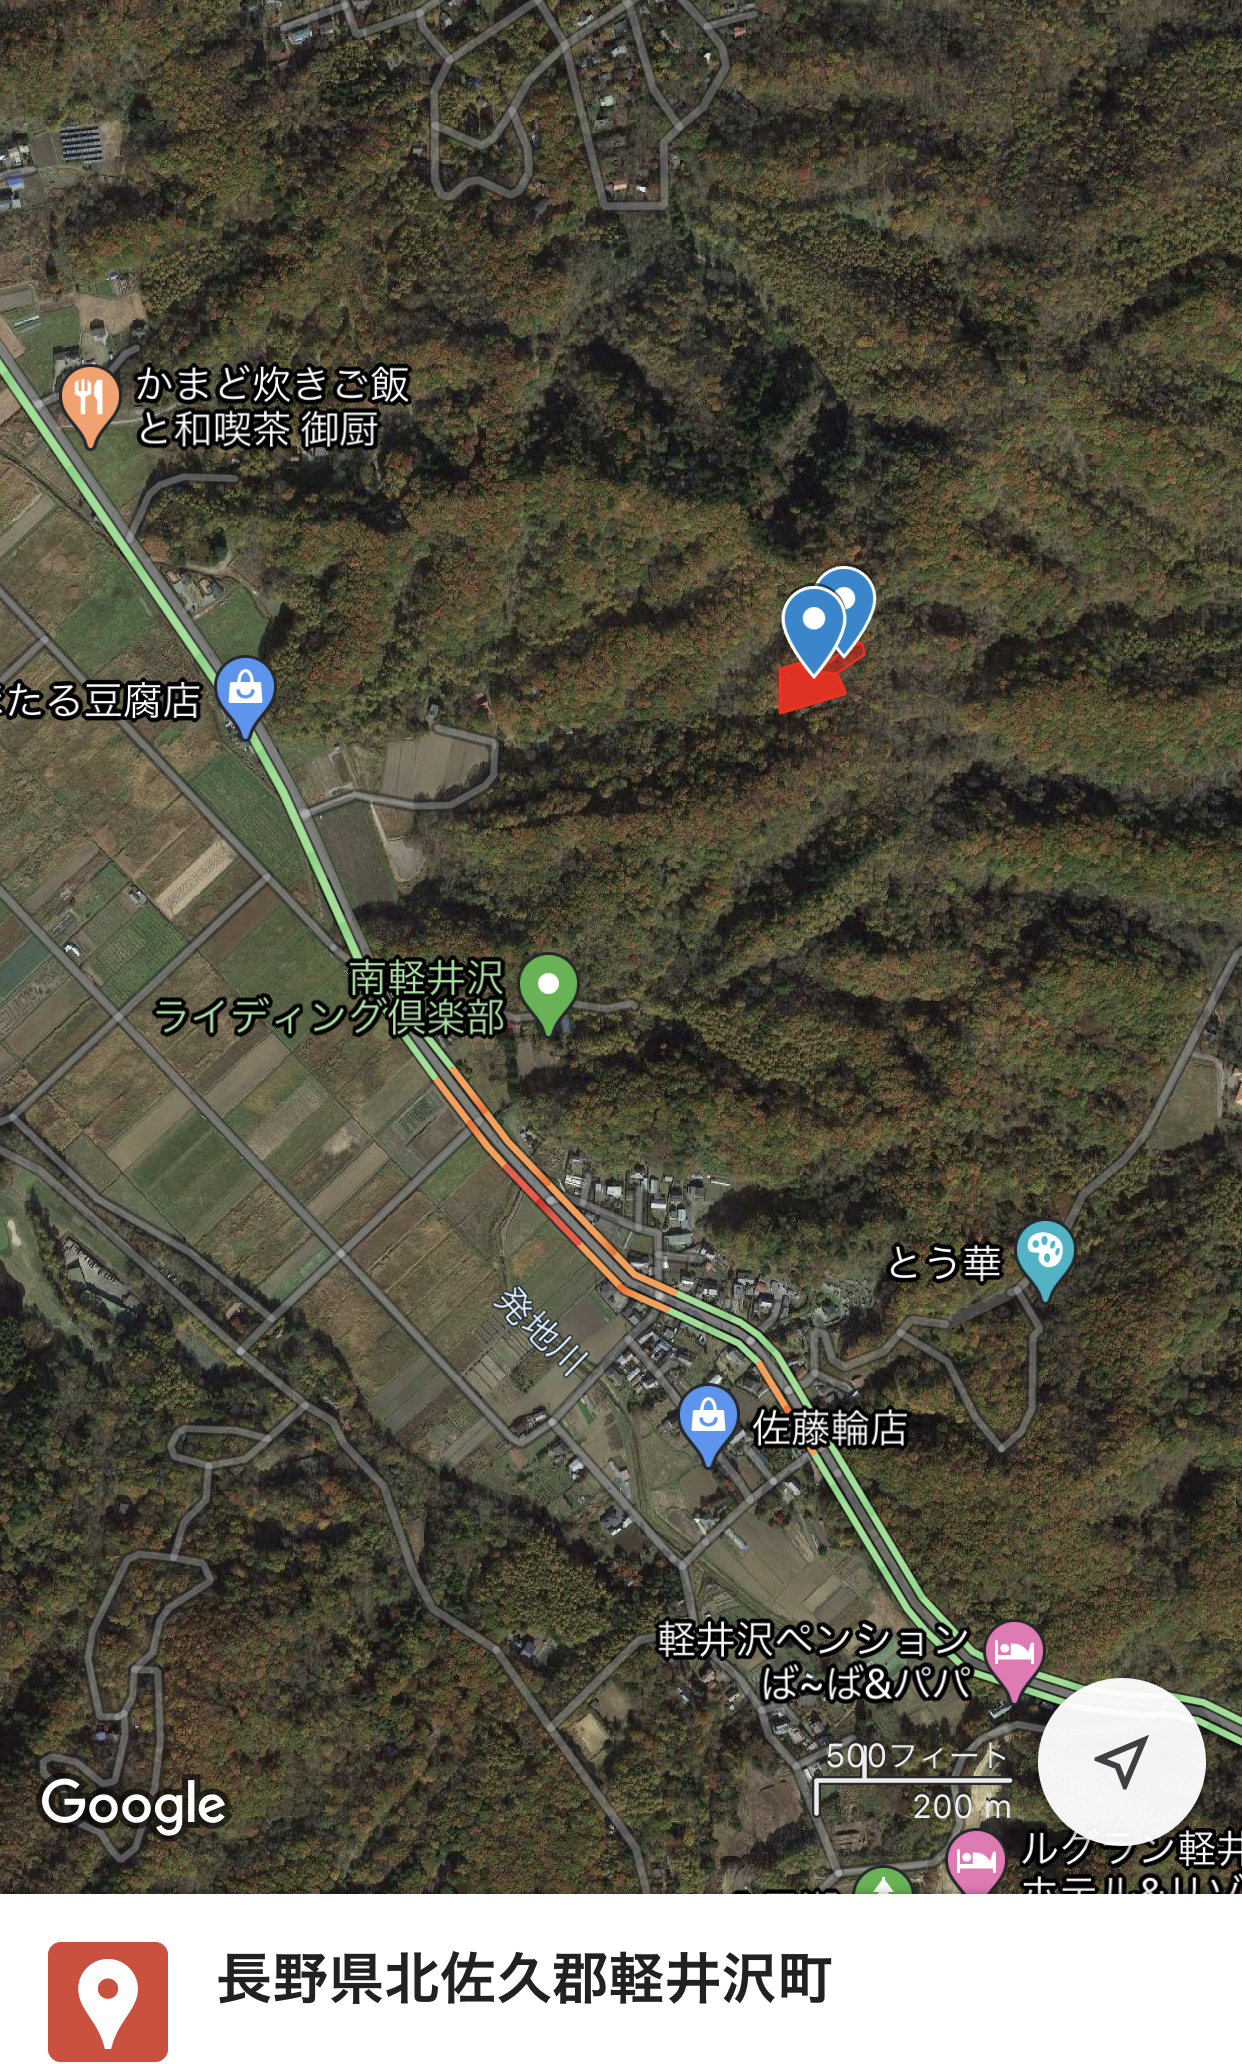   長野県北佐久郡軽井沢町大字発地字中山にある山林です。325万円